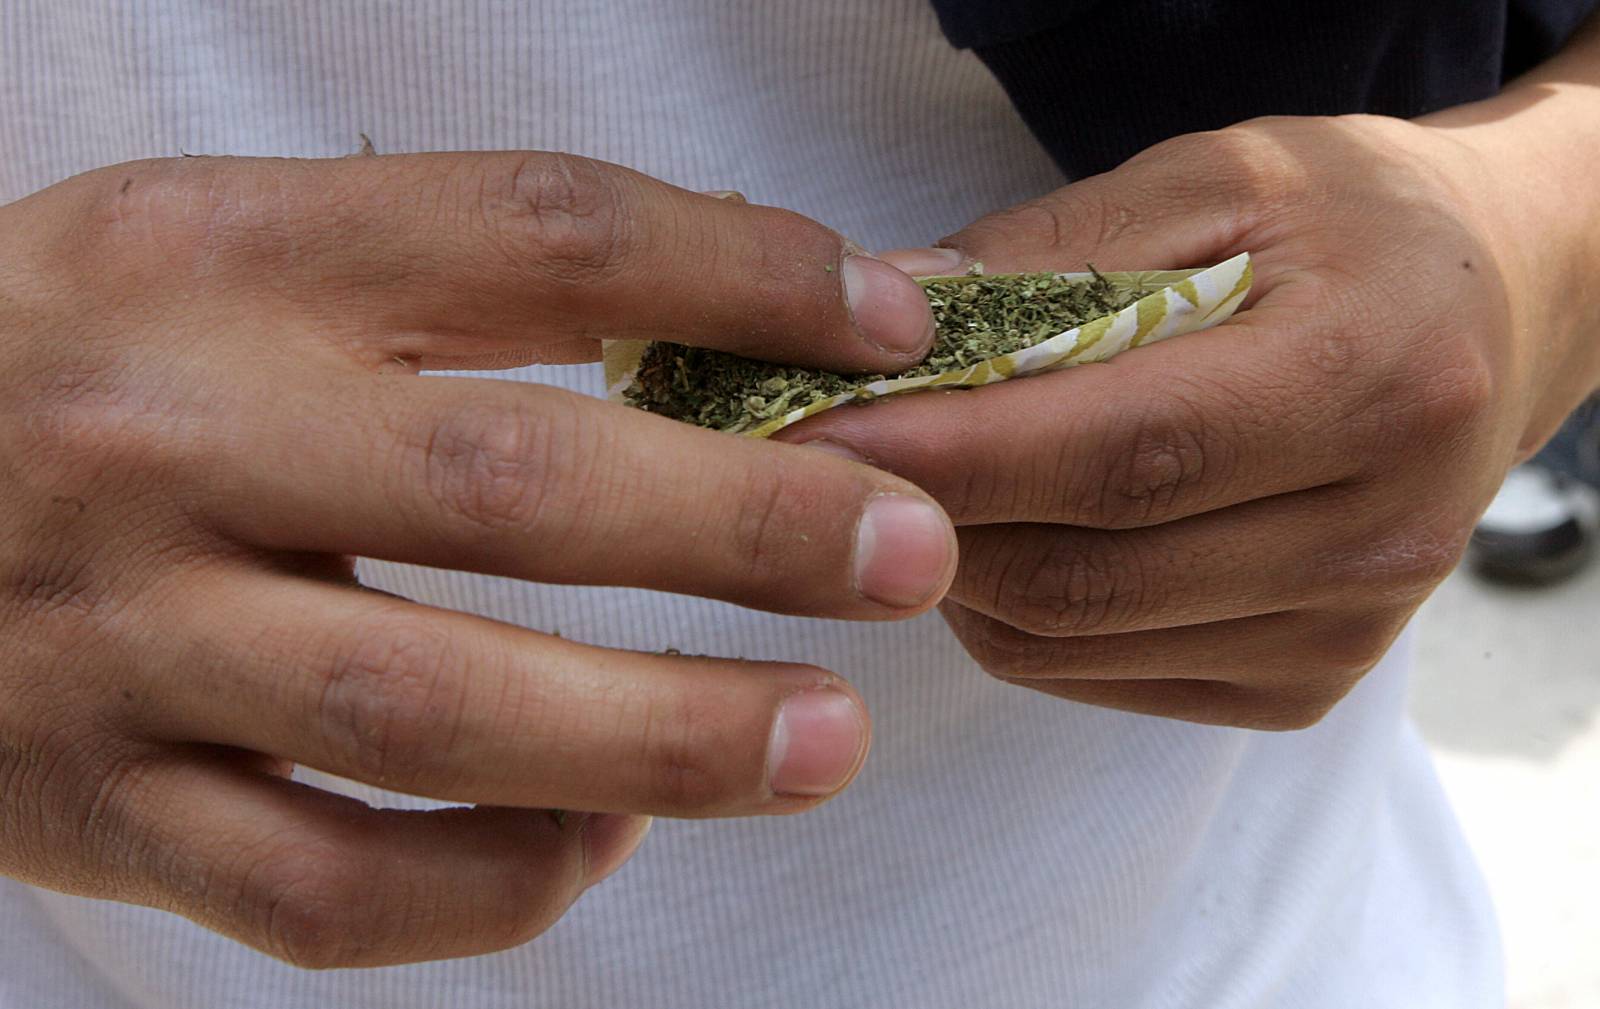 Legalizar la marihuana puede hacer aumentar su consumo, según un estudio